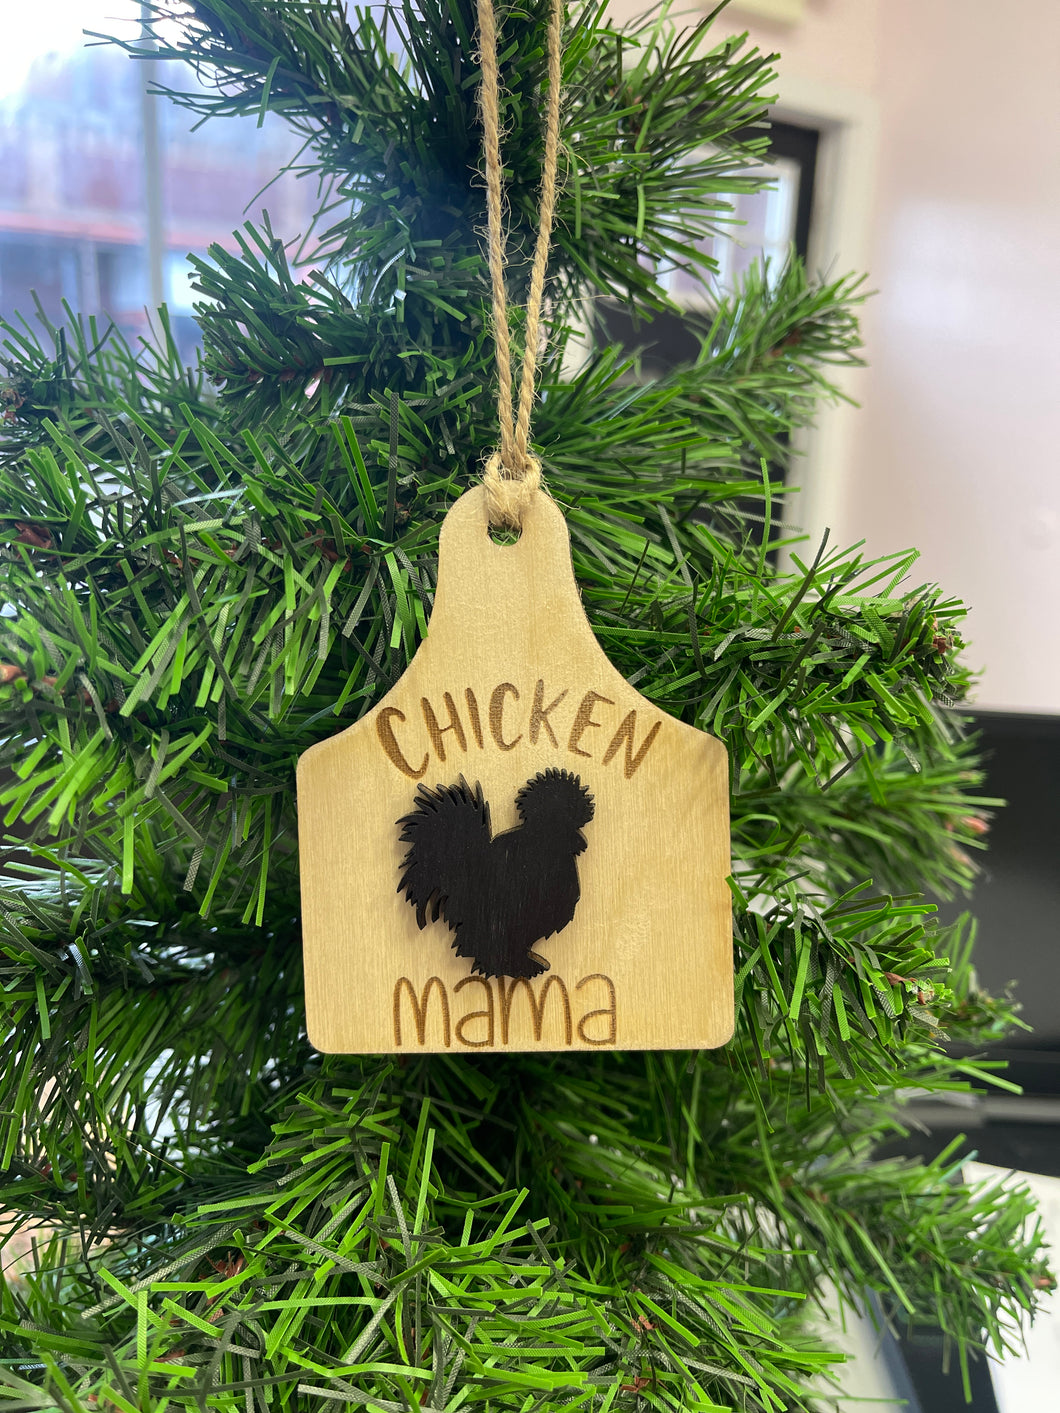 Chicken Mama ornament